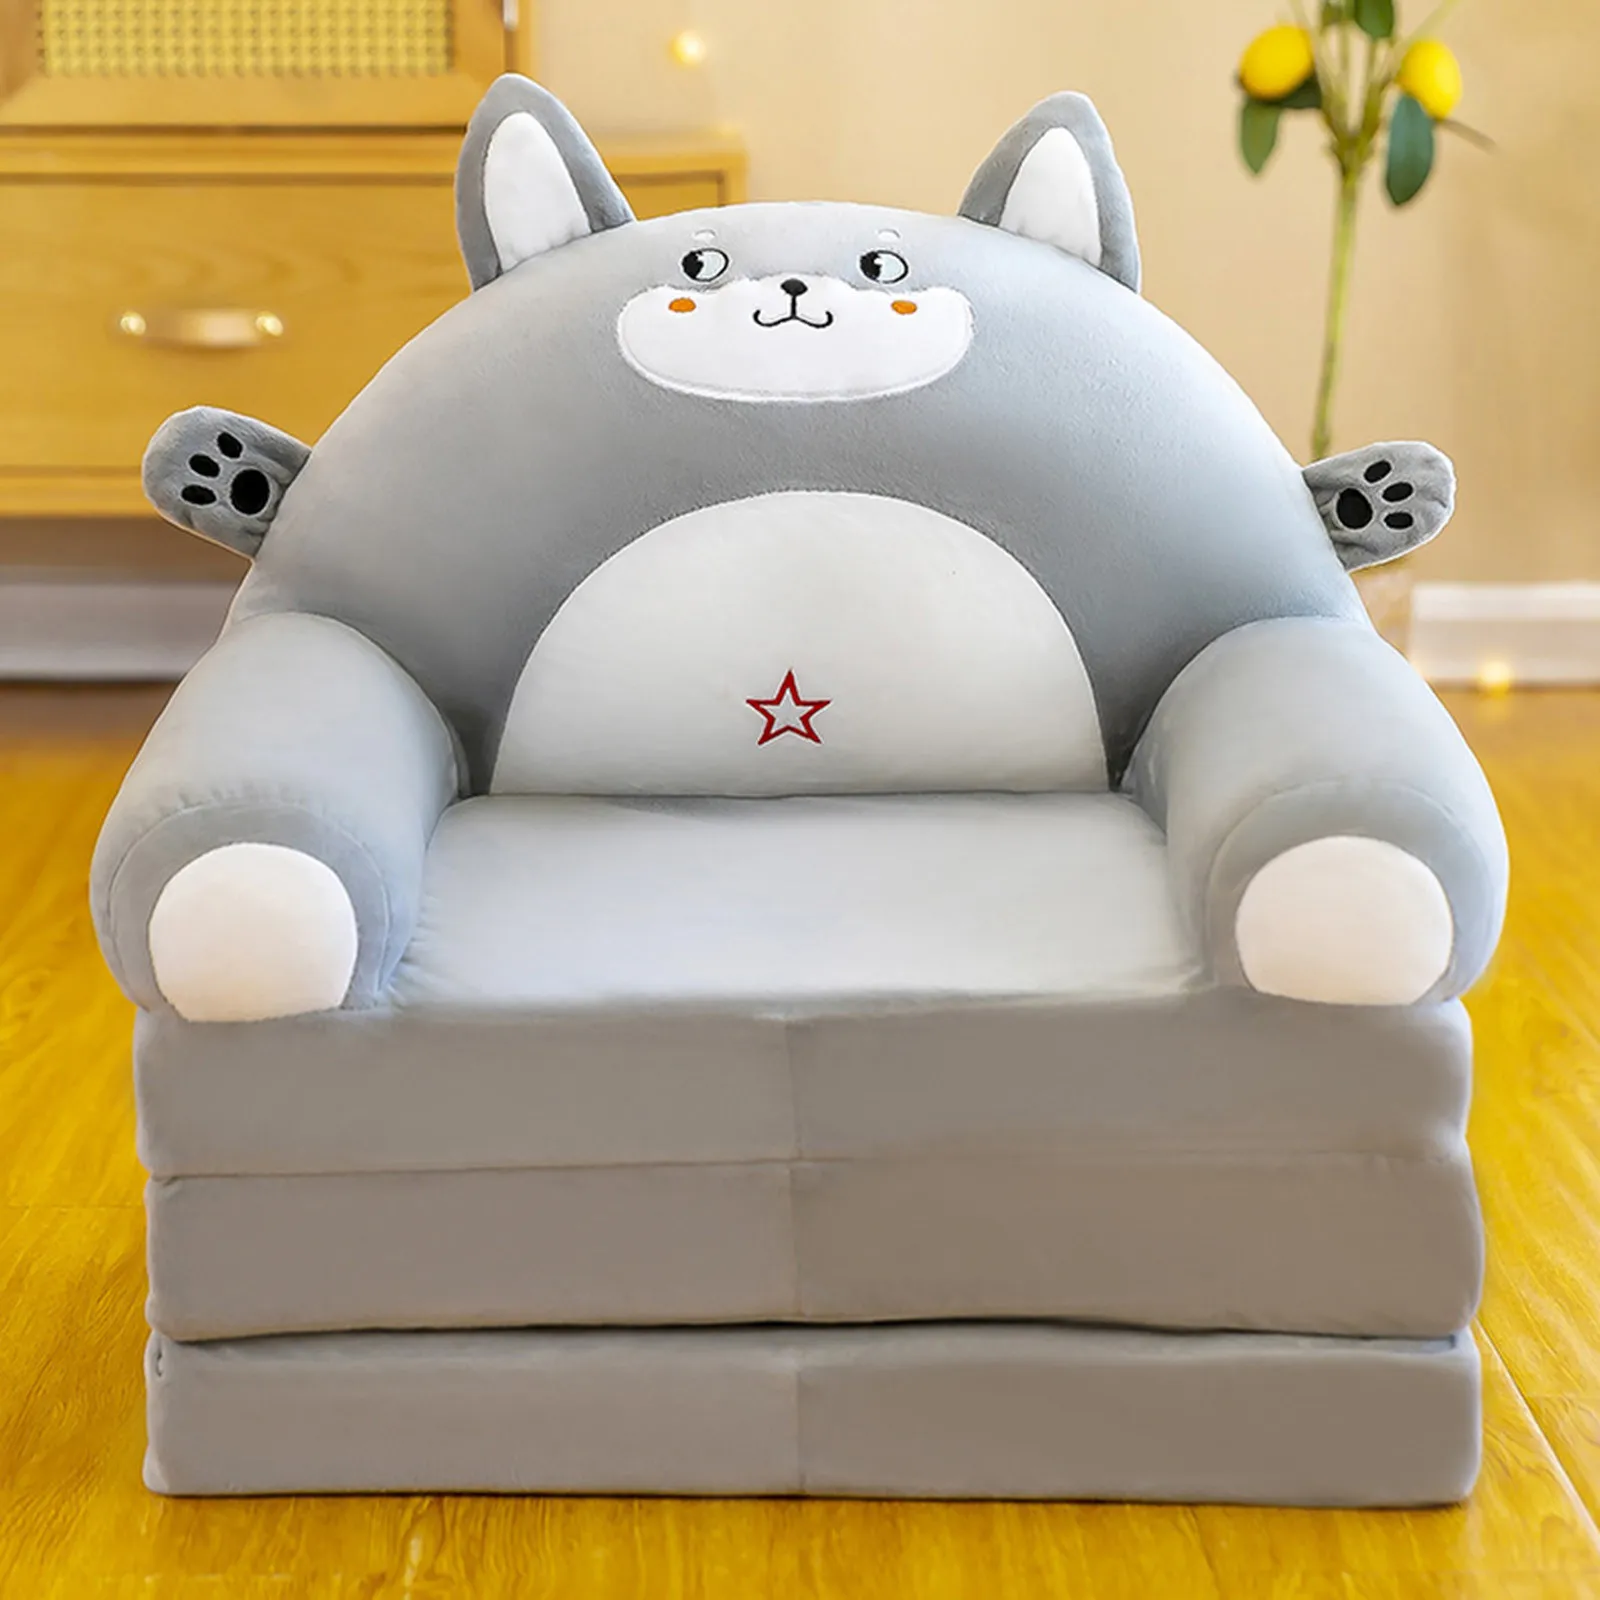 https://ae01.alicdn.com/kf/S7f37010138594ebeb75fbd309f1d6db7v/Plush-Foldable-Kids-Sofa-Backrest-Chair-Children-Flip-Open-Sofa-Bed-Cute-Cartoon-Toddler-Armchair-Living.jpg